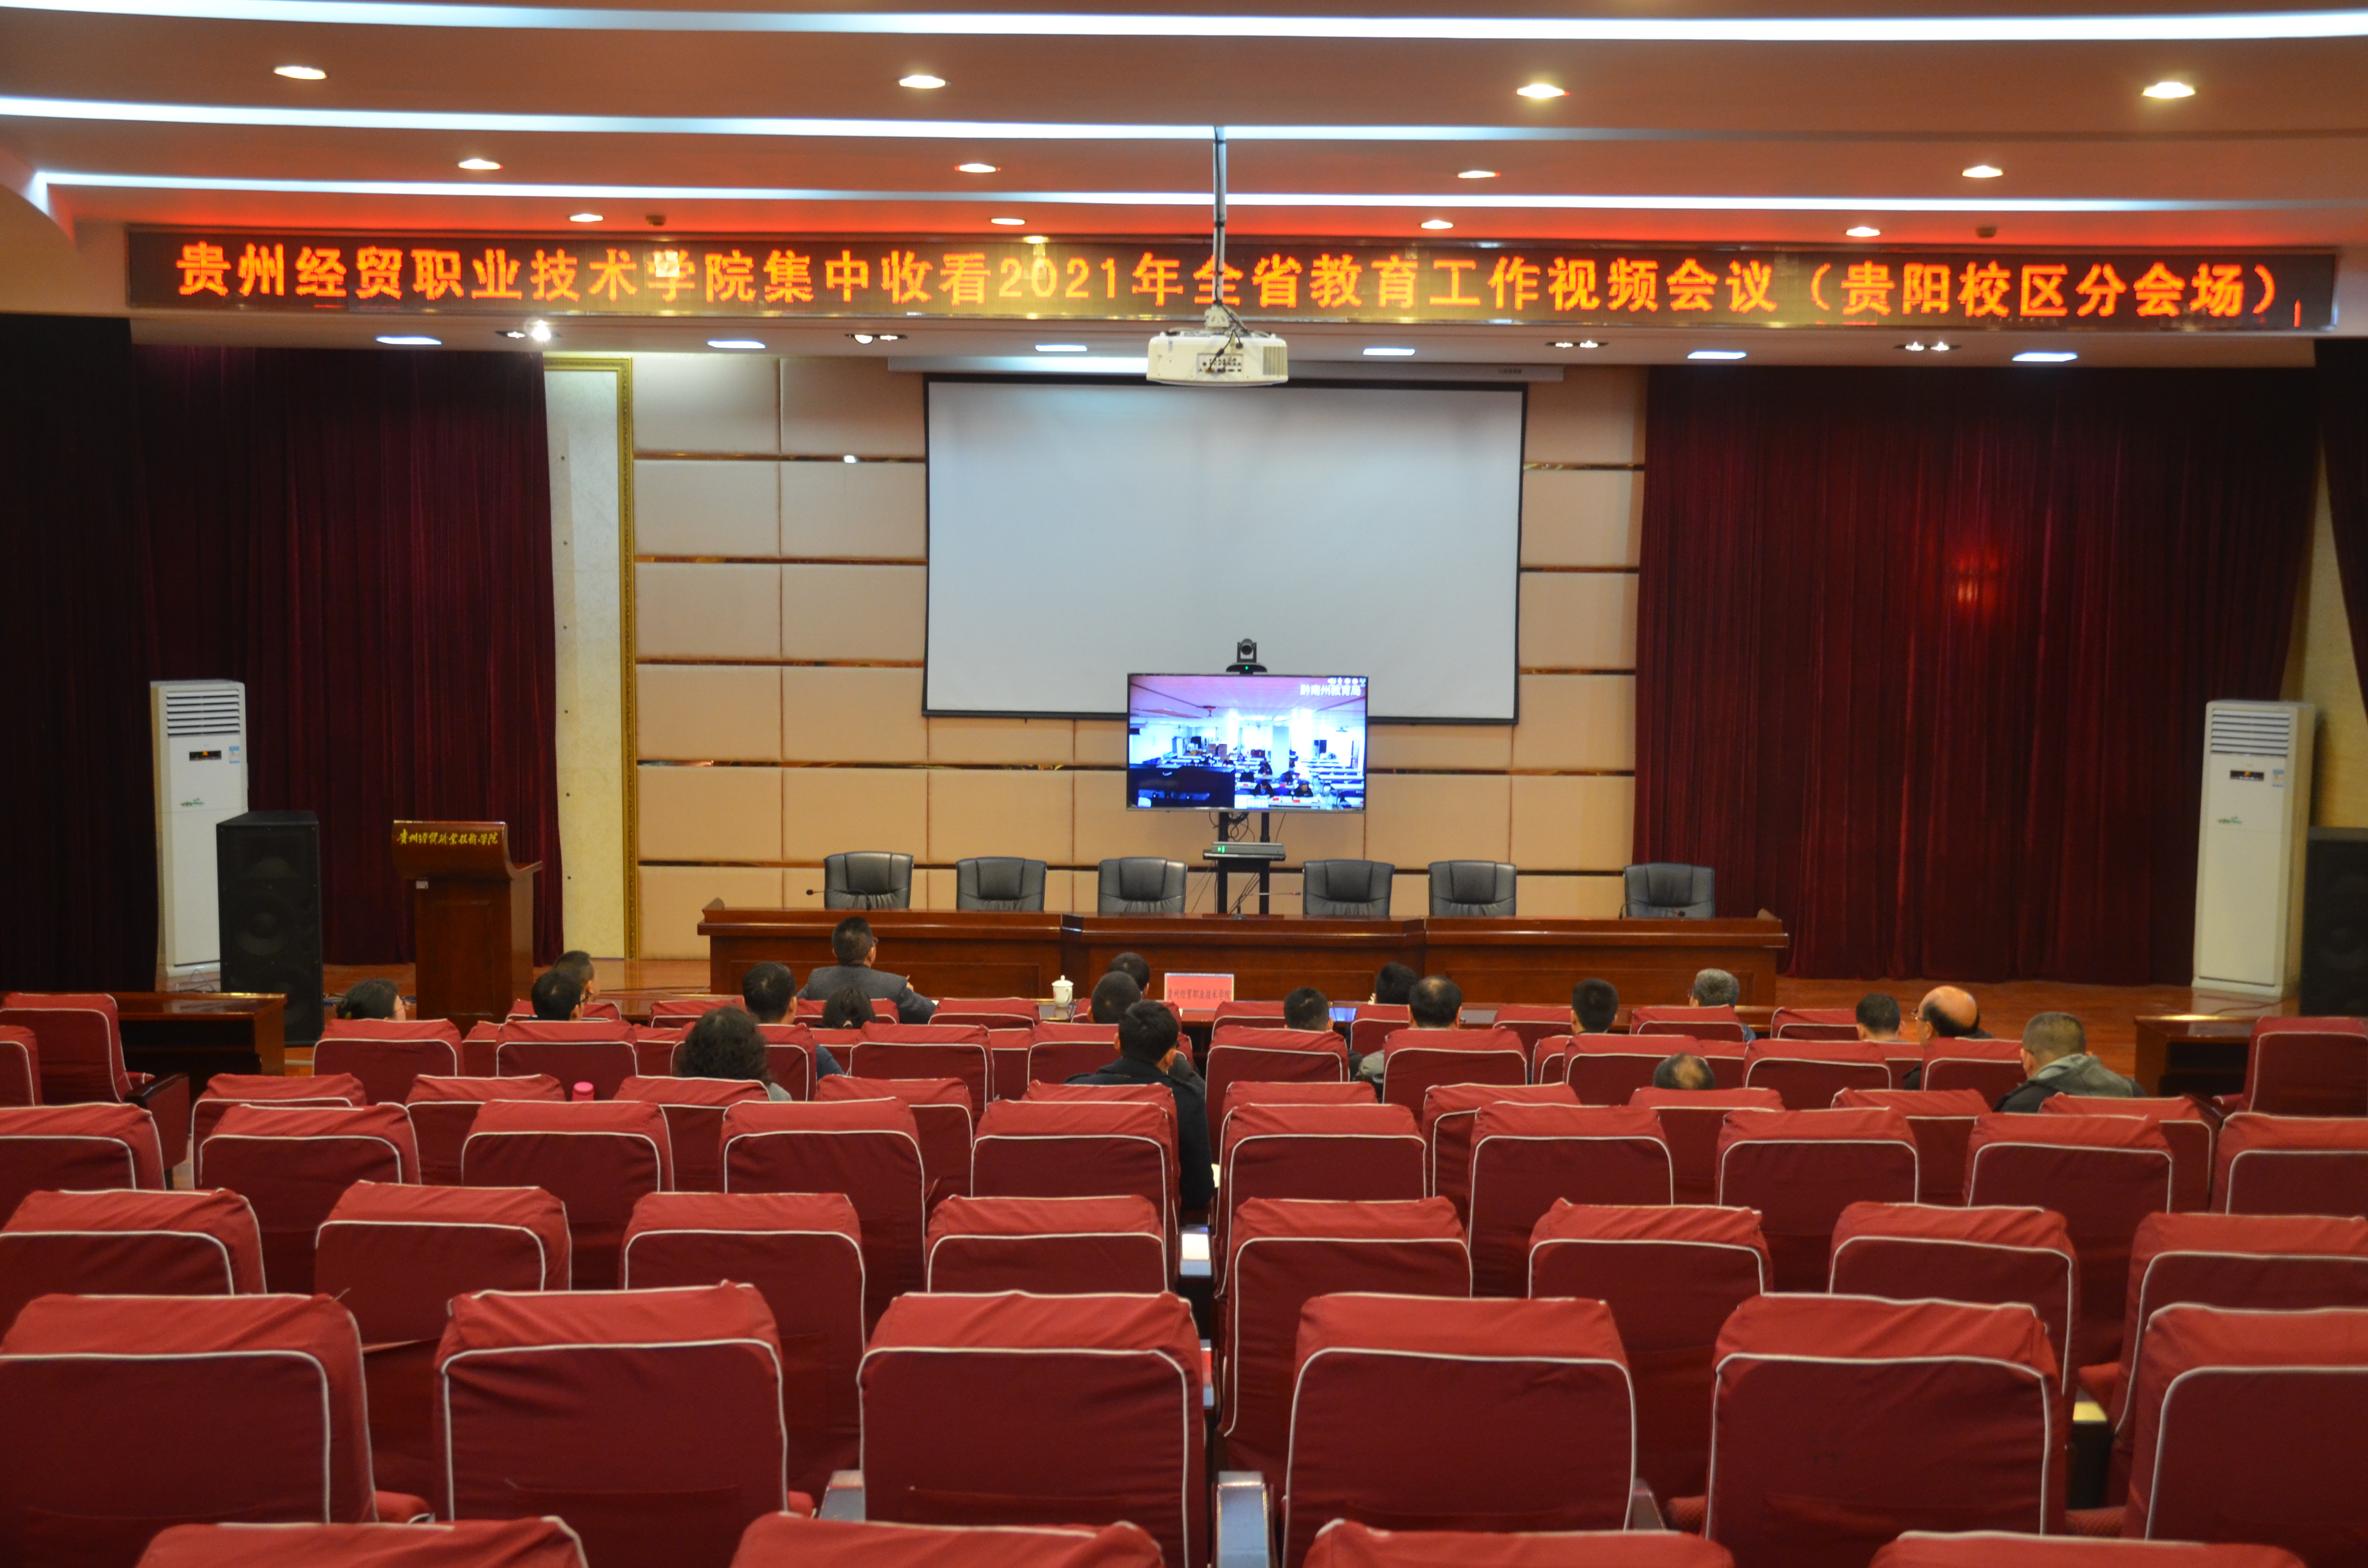 学院本部、贵阳校区设分会场参加2021年全省教育工作会议(图文)